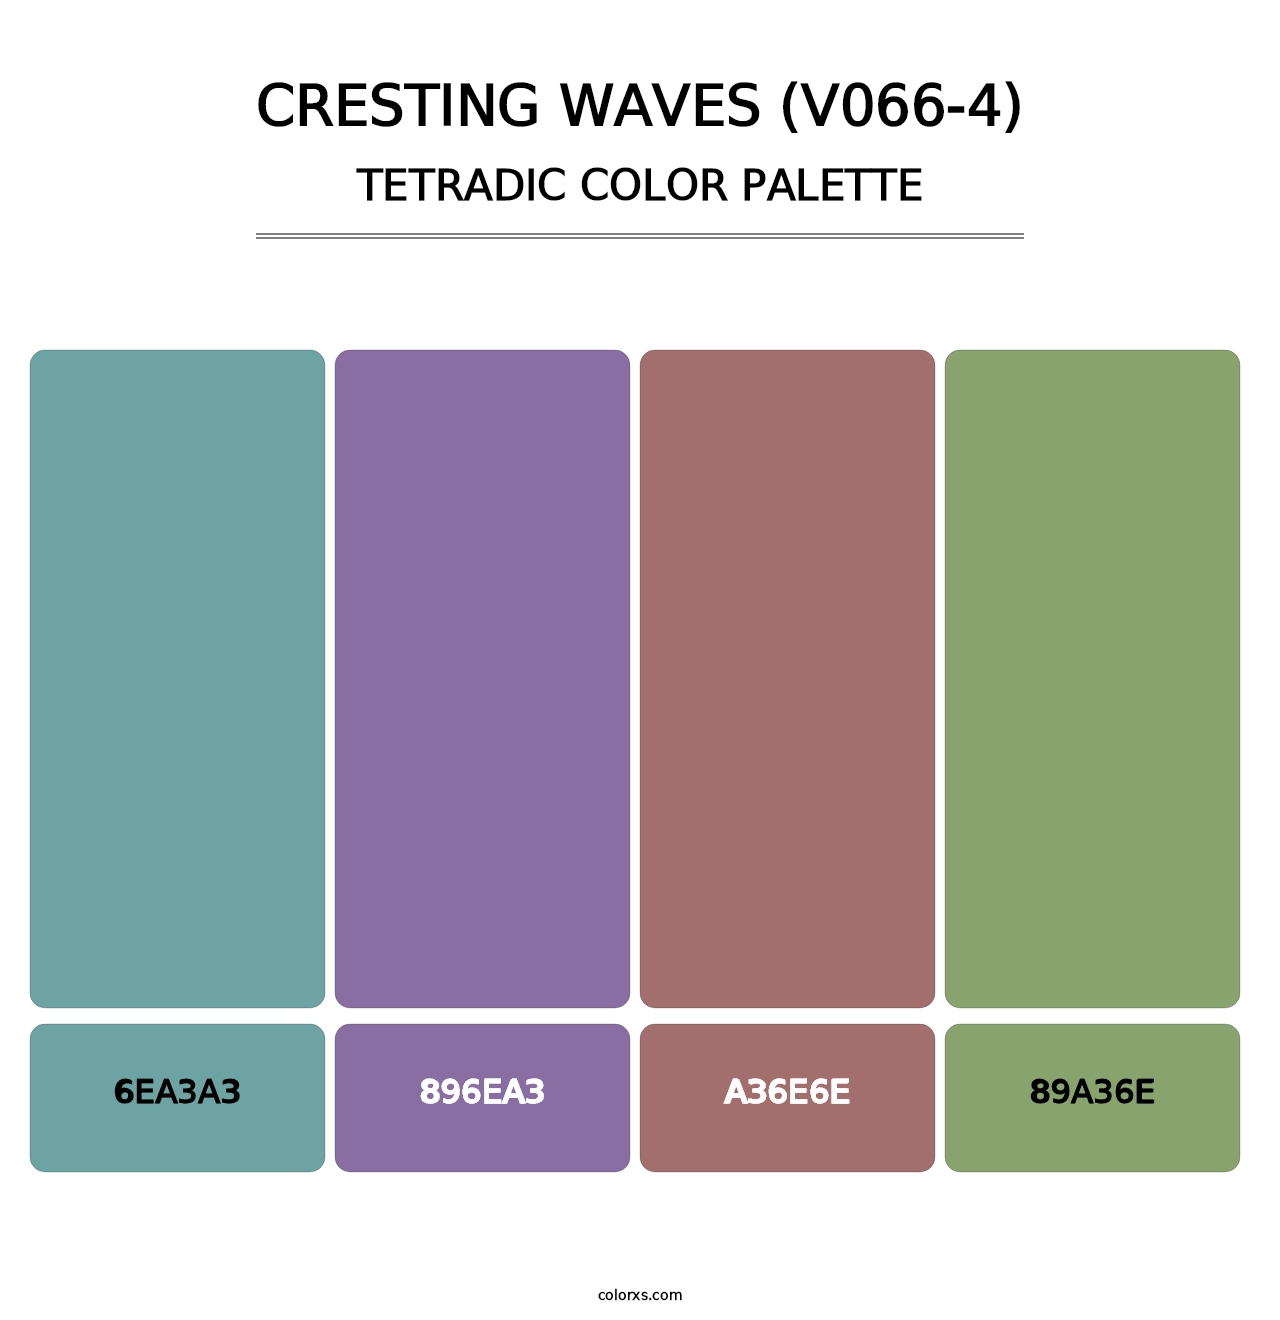 Cresting Waves (V066-4) - Tetradic Color Palette